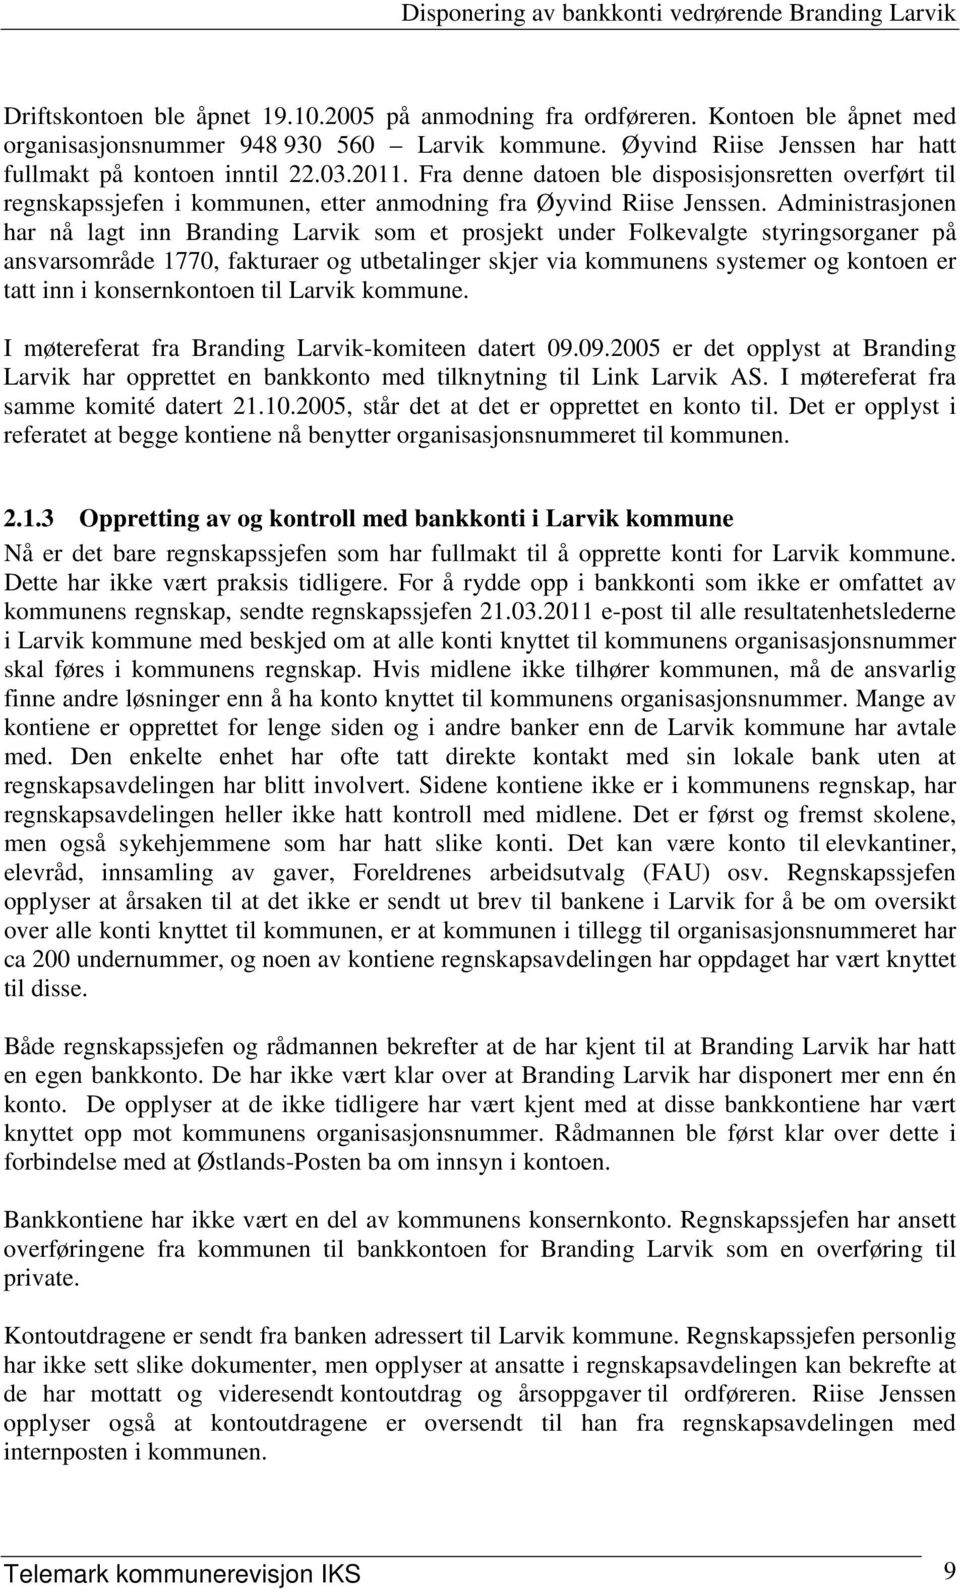 Administrasjonen har nå lagt inn Branding Larvik som et prosjekt under Folkevalgte styringsorganer på ansvarsområde 1770, fakturaer og utbetalinger skjer via kommunens systemer og kontoen er tatt inn